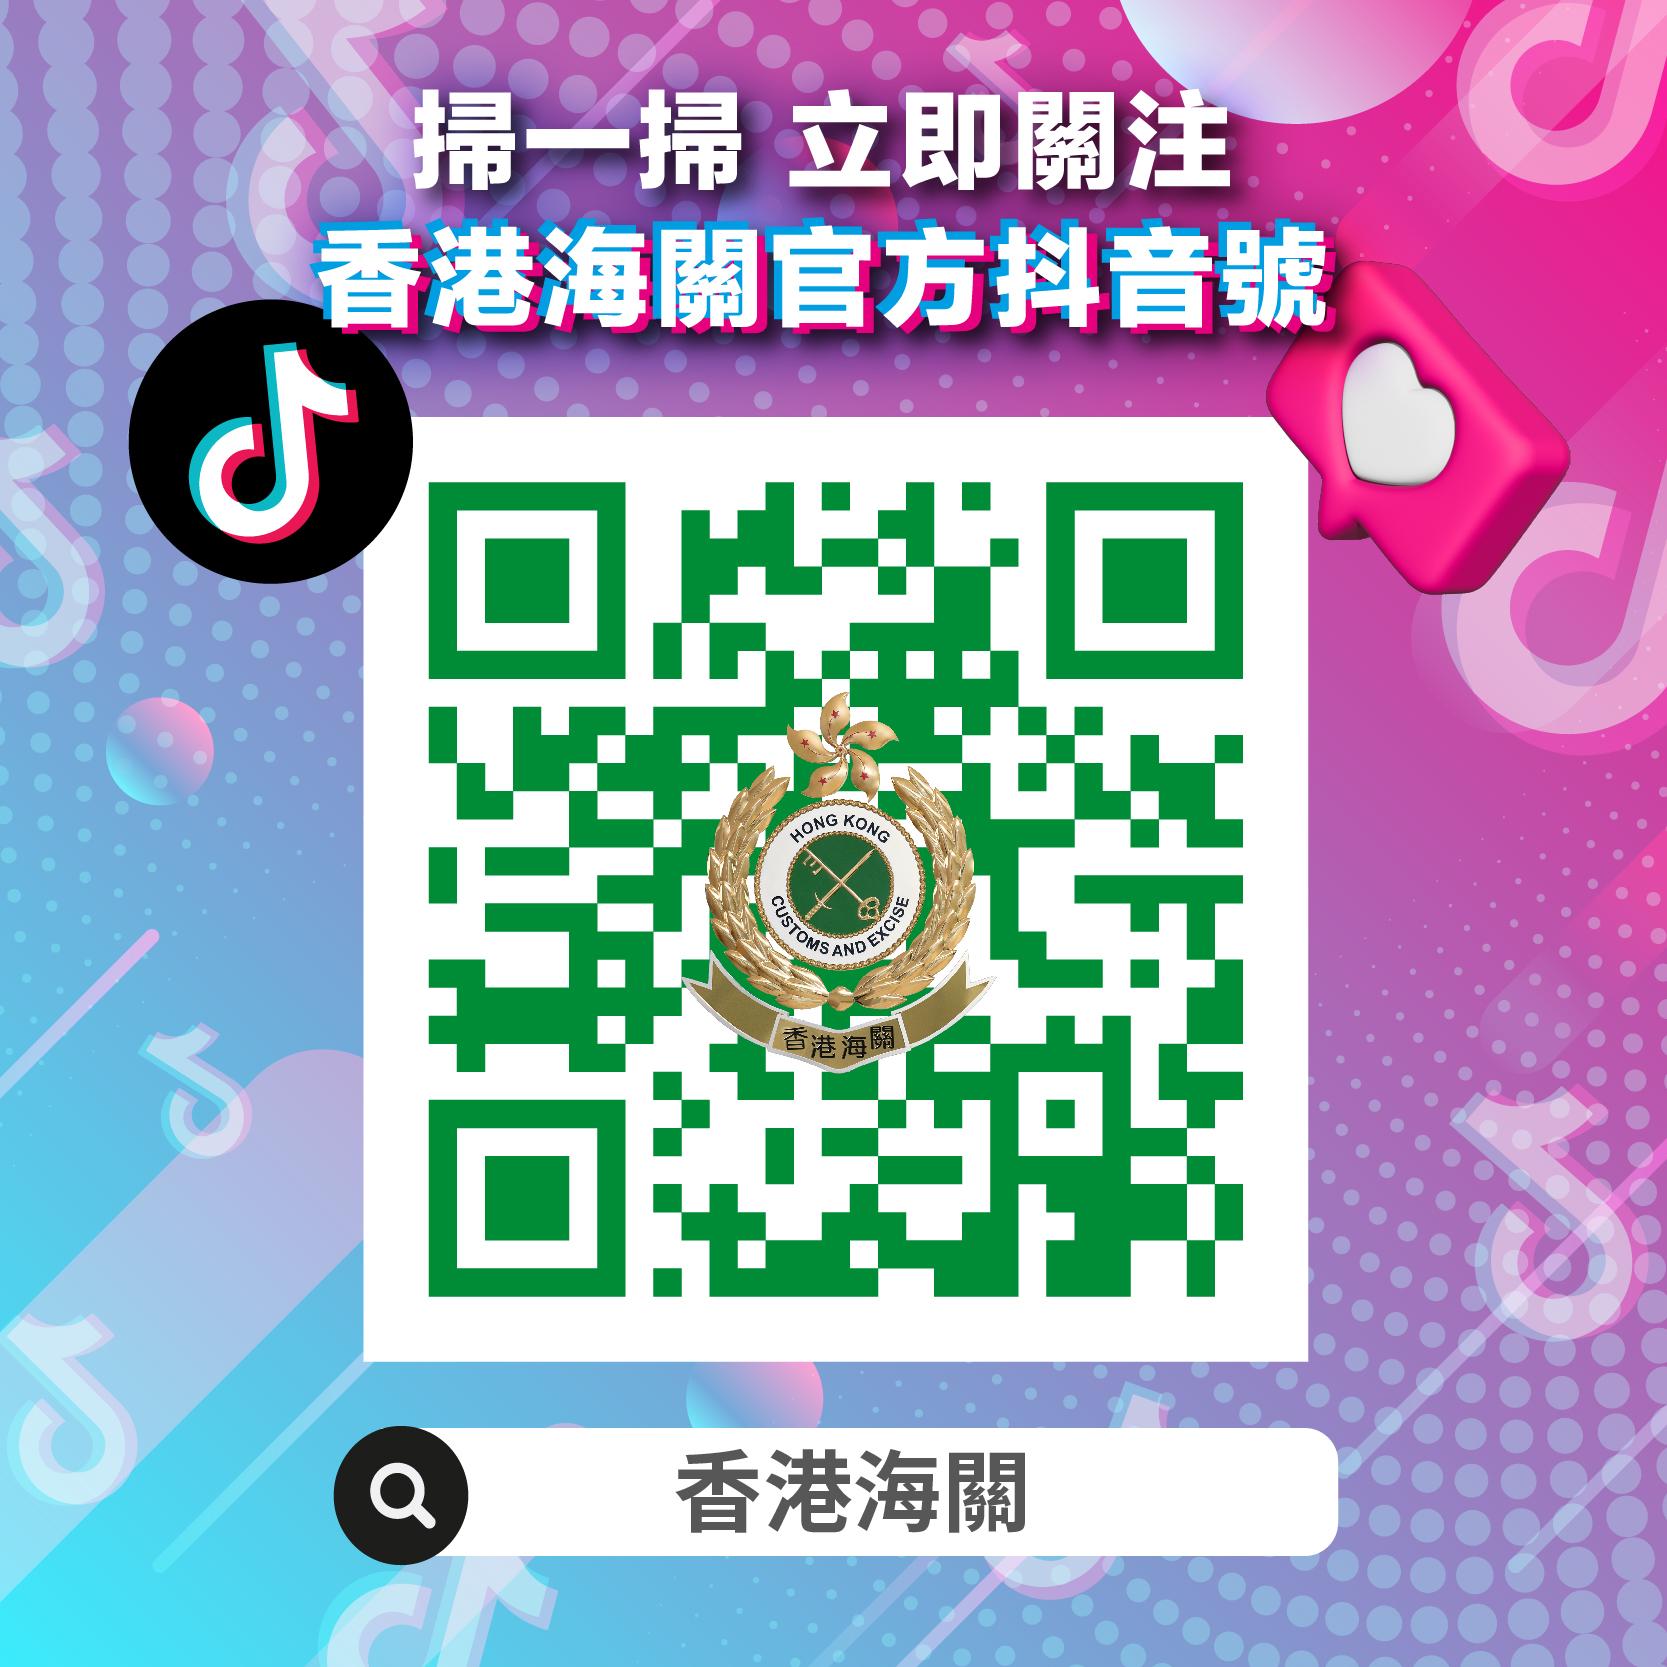 香港海关抖音官方帐号今日（四月二十六日）正式启用，海关关长何珮珊特别为此拍摄宣传短片作开通序幕。图示香港海关抖音官方帐号的二维码。